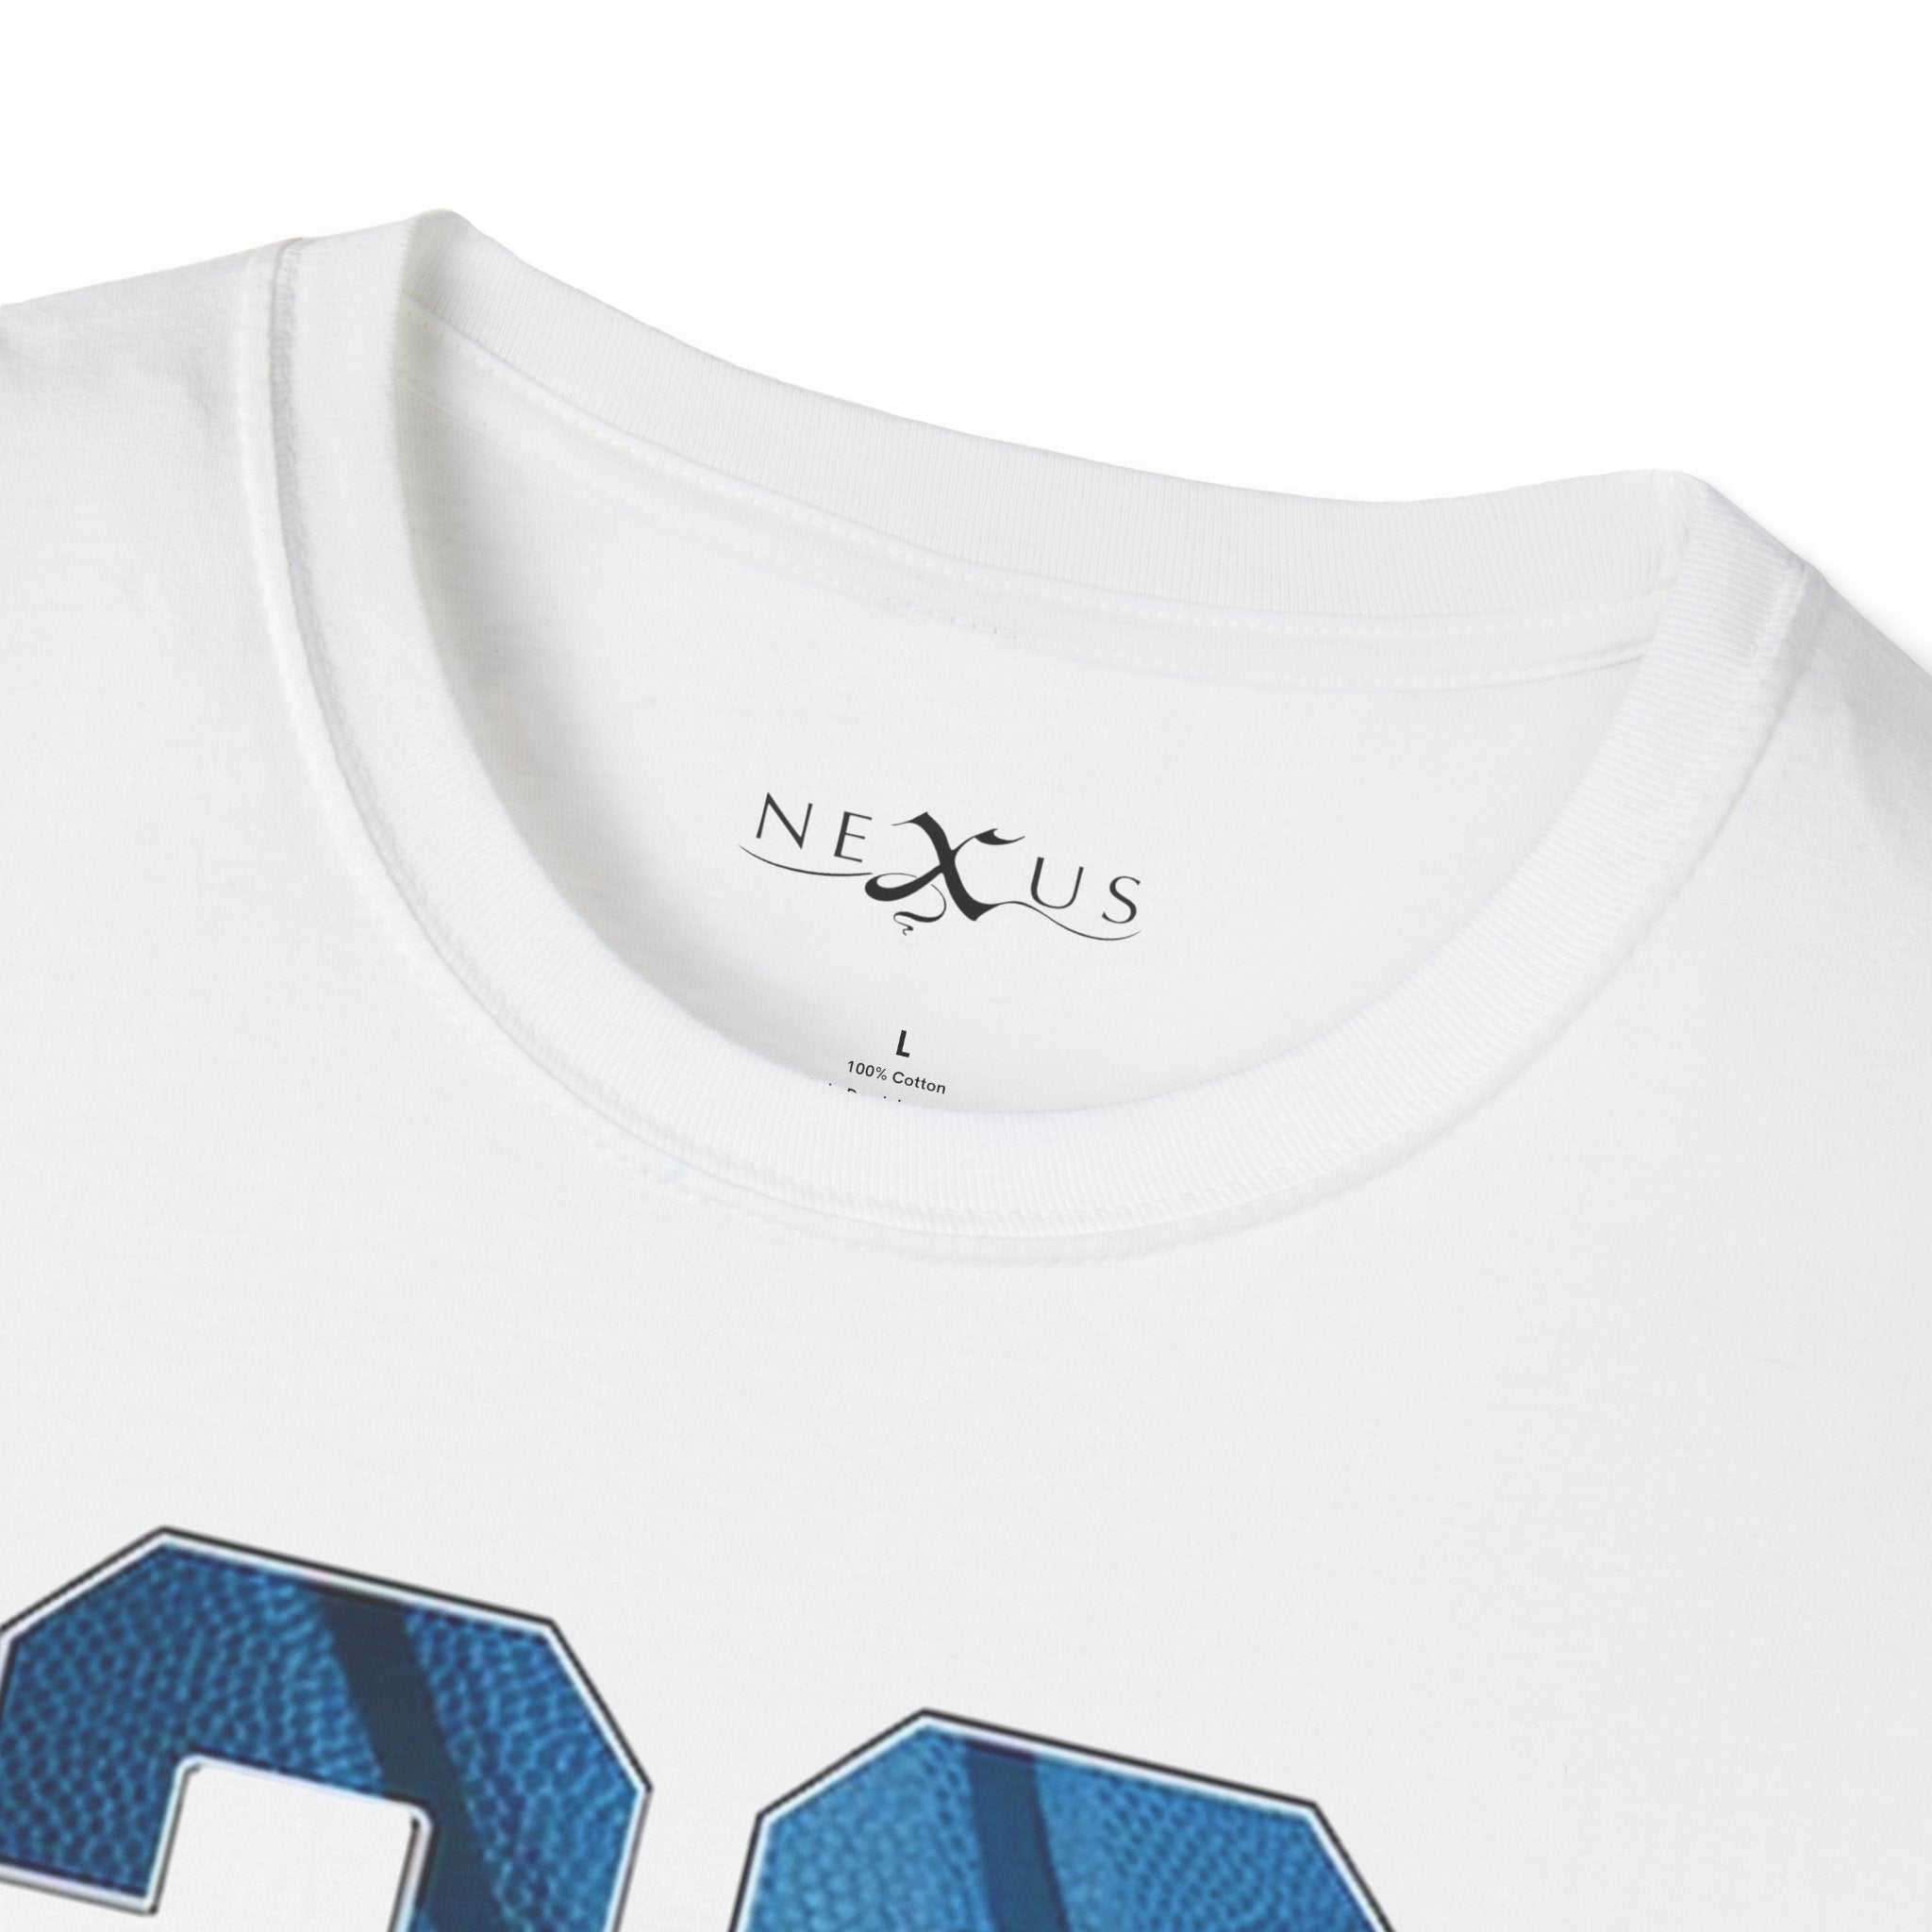 Nexus Clothing Men Panther Number 23 Basketball Sneaker Soft style Tee (White)-Nexus Clothing